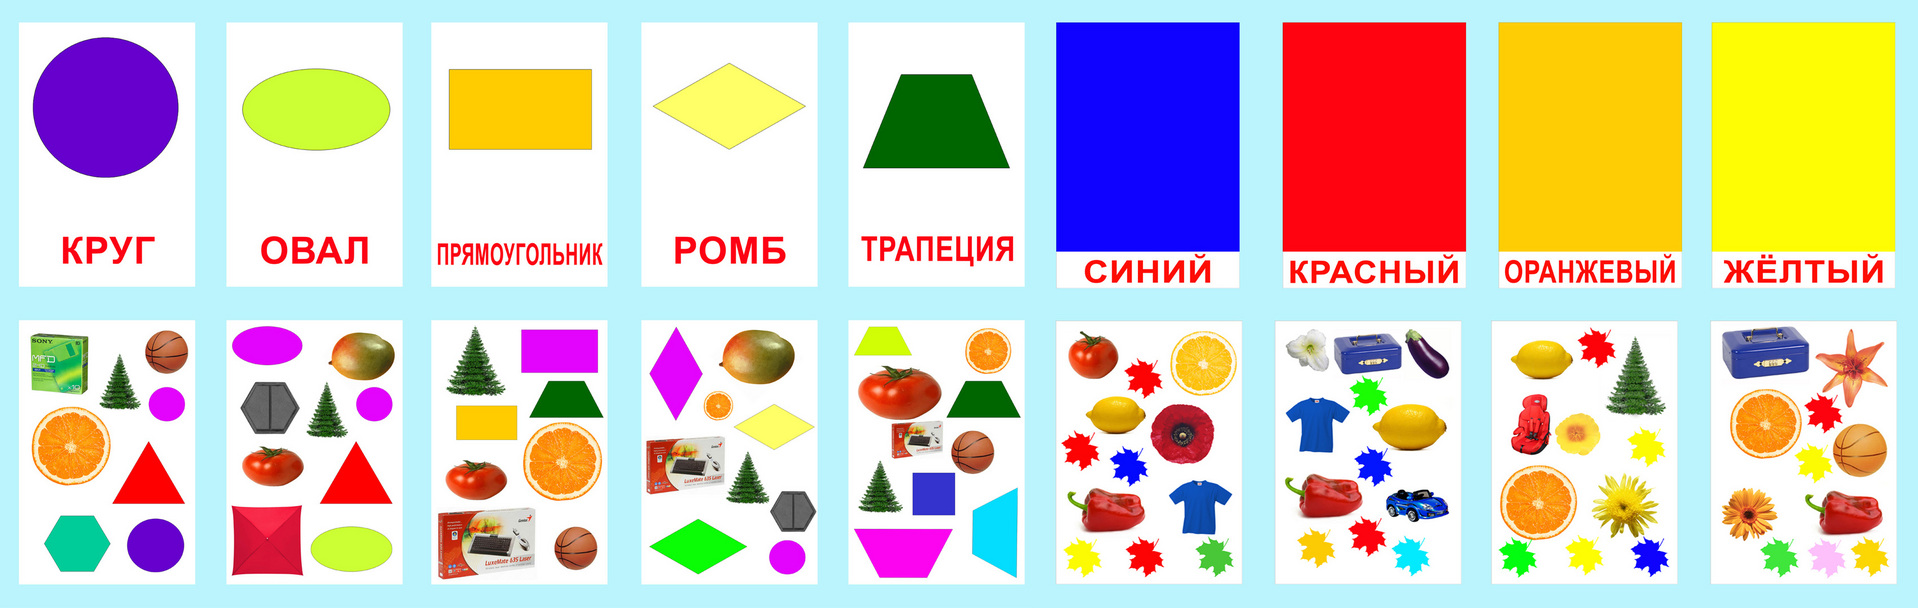 Развивающие игры названия. Геометрические фигуры для малышей. Цвета и формы для детей. Карточки цвета и формы. Геометрические фигуры цветные.